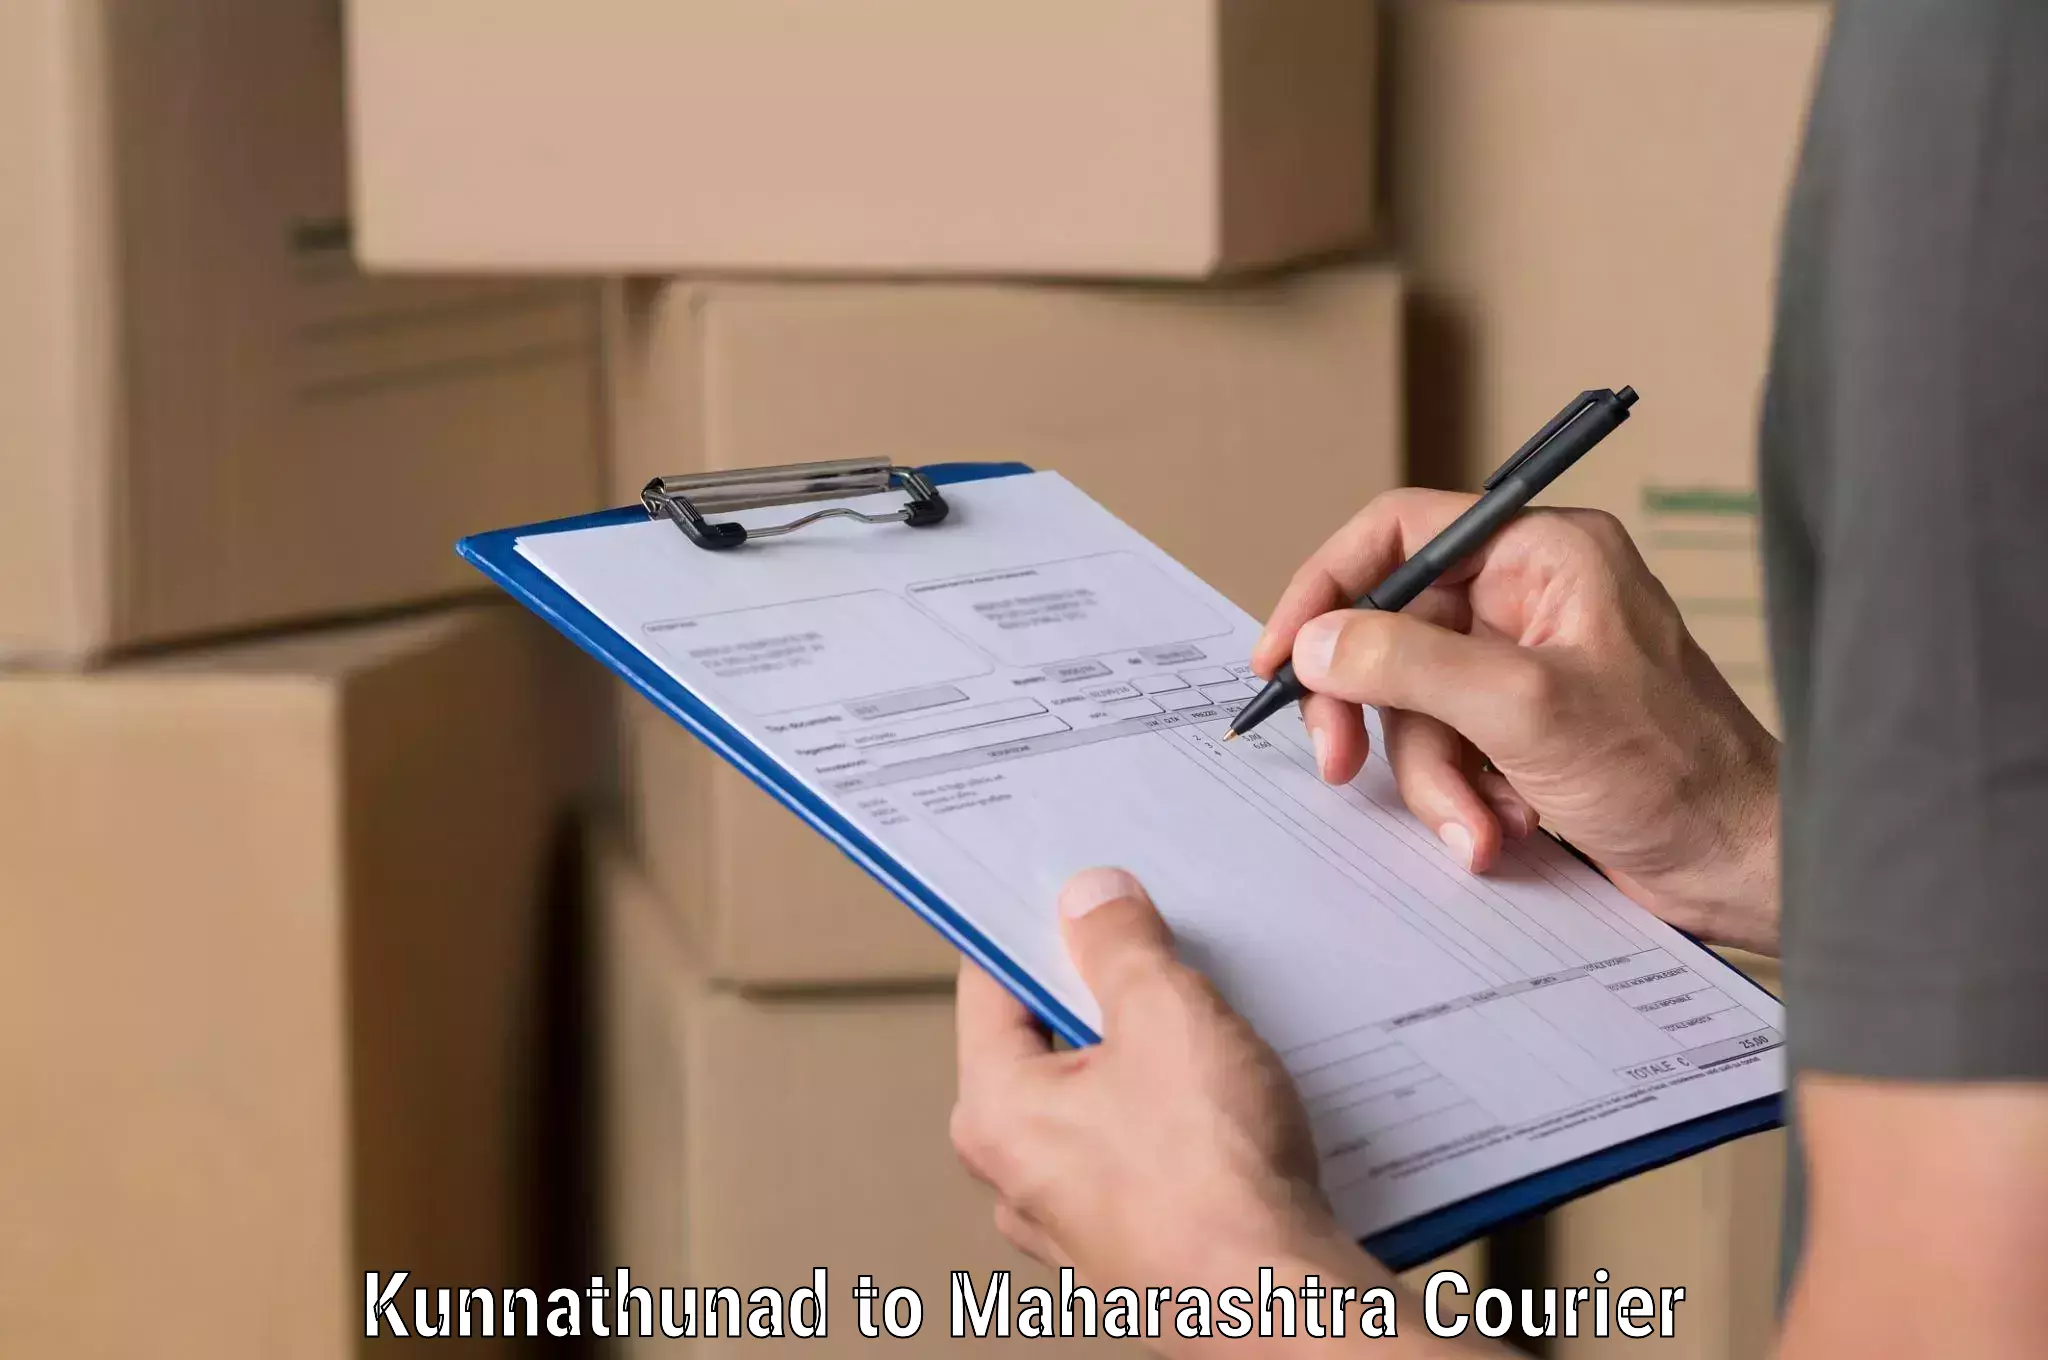 Logistics service provider Kunnathunad to Maharashtra